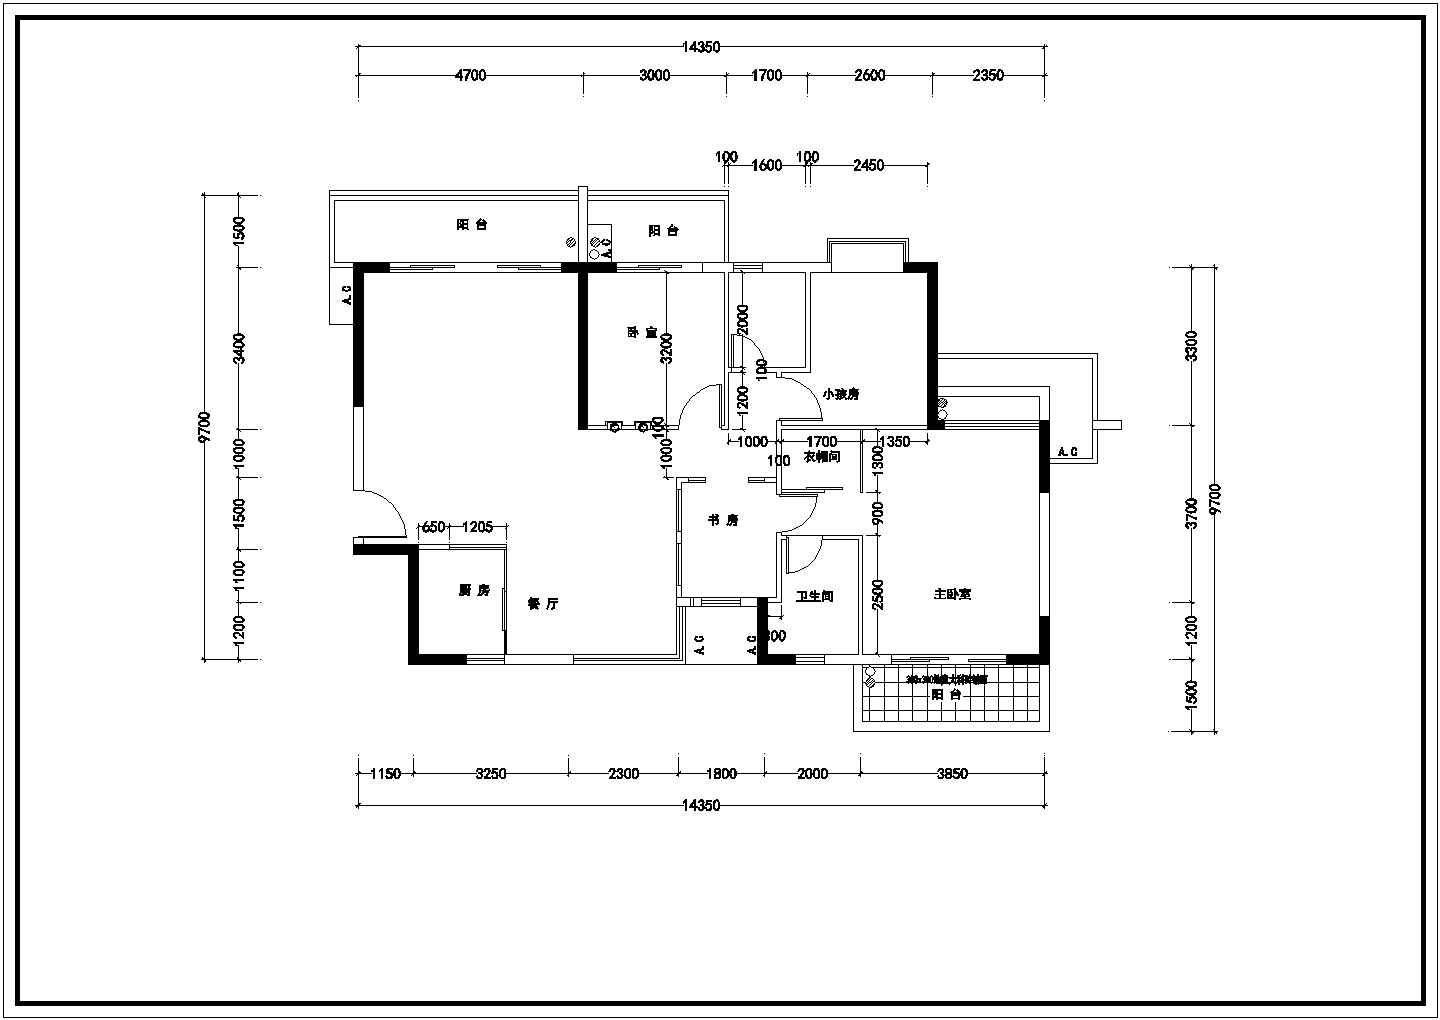 某地小洋房全套中心施工设计cad图纸(含平面布置图、配电系统图）